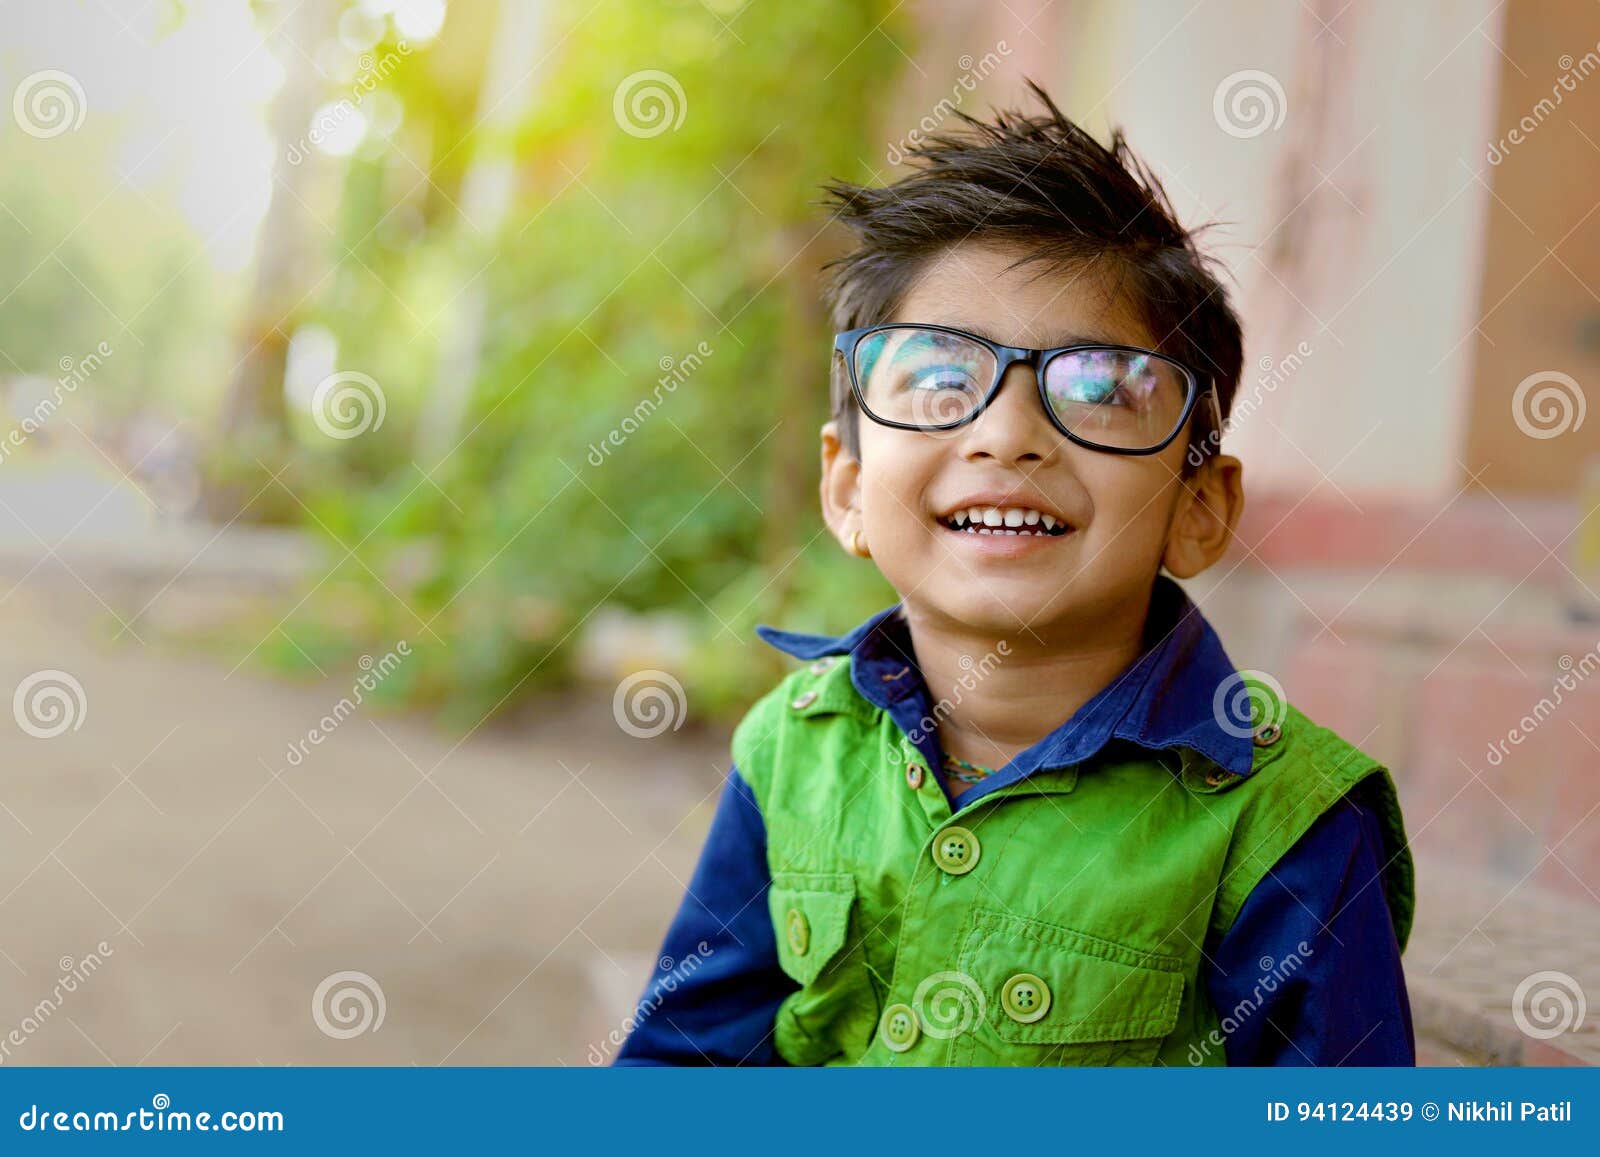 indian child wearing eyeglasses